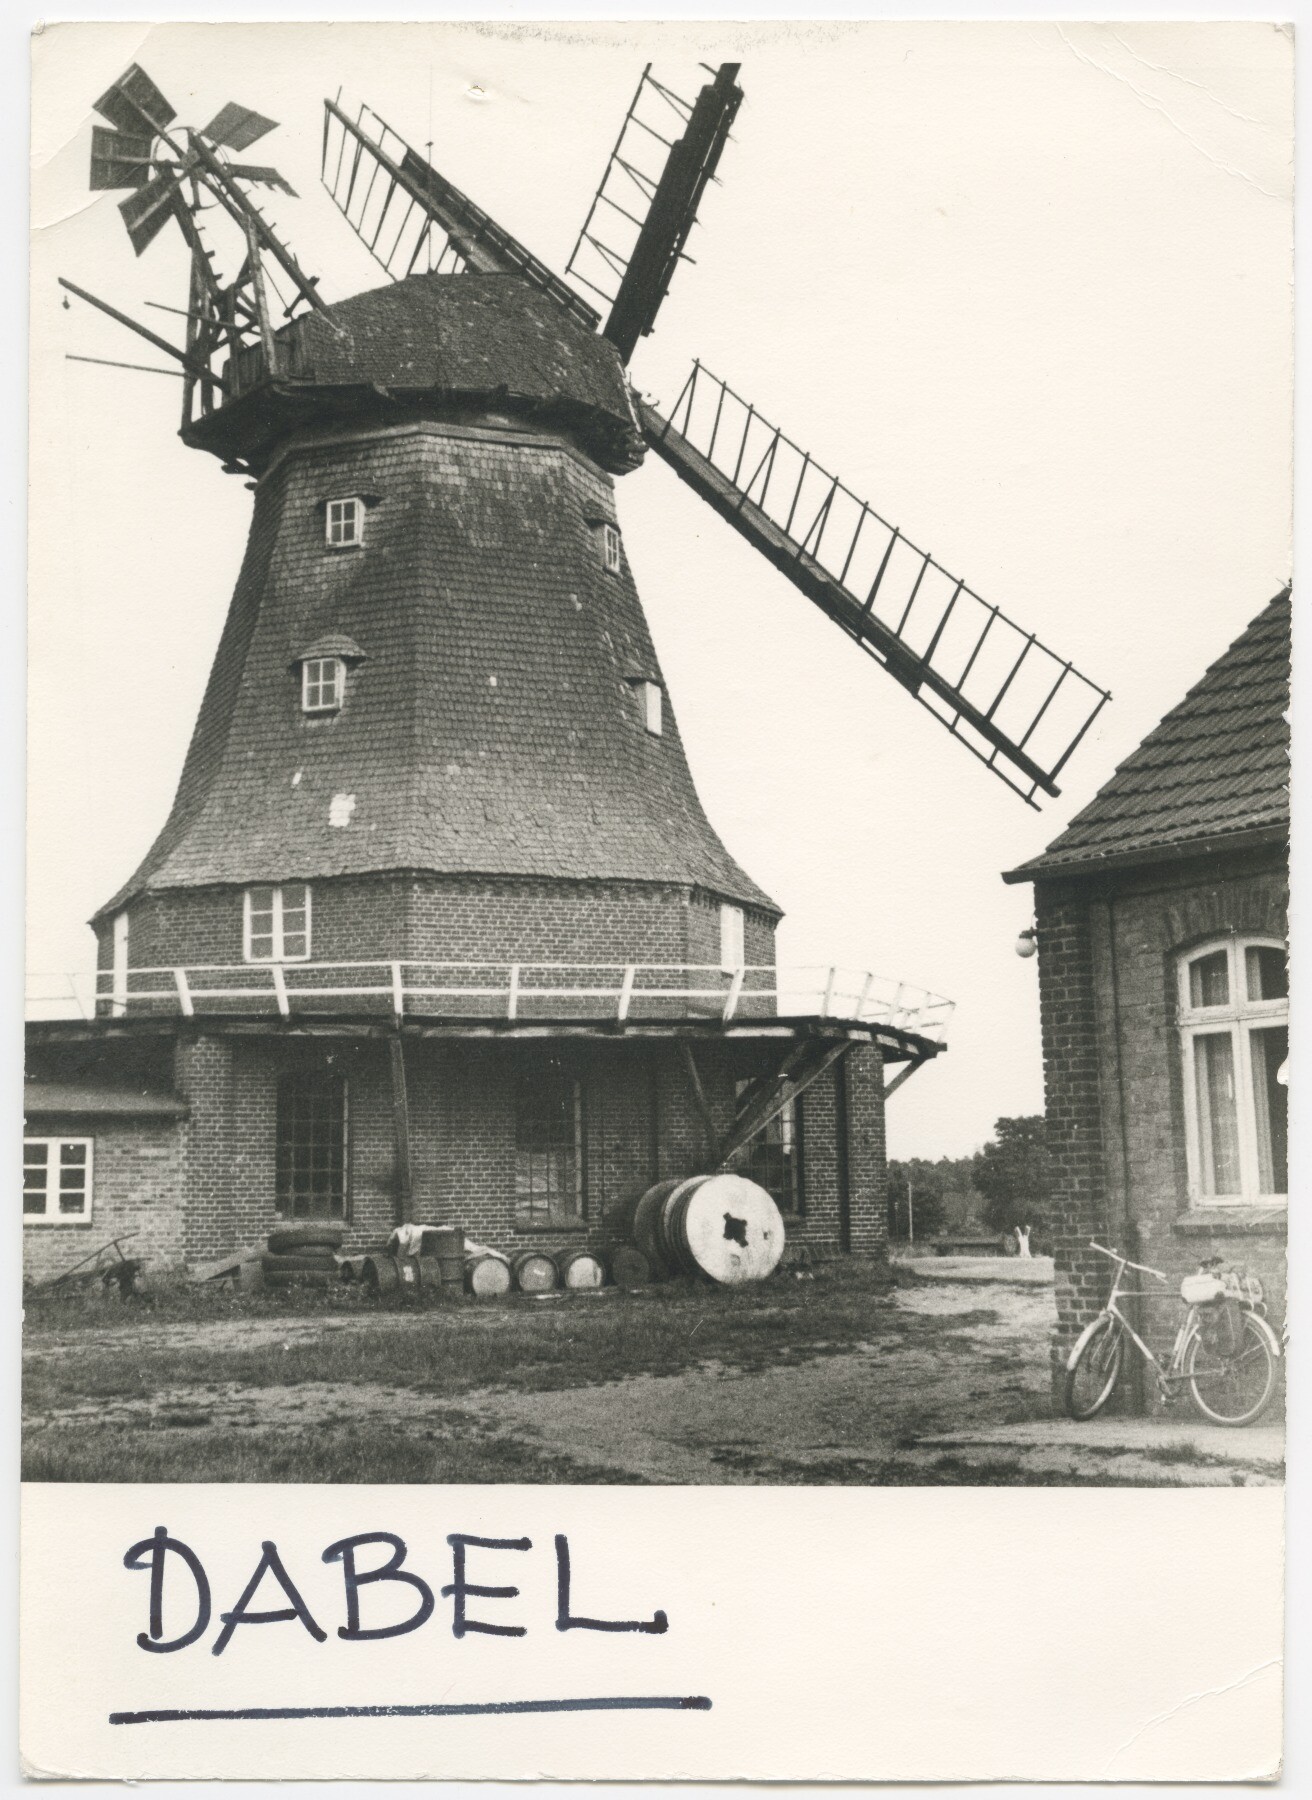 Galerieholländerwindmühle Dabel (Historische Mühle von Sanssouci CC BY-NC-ND)